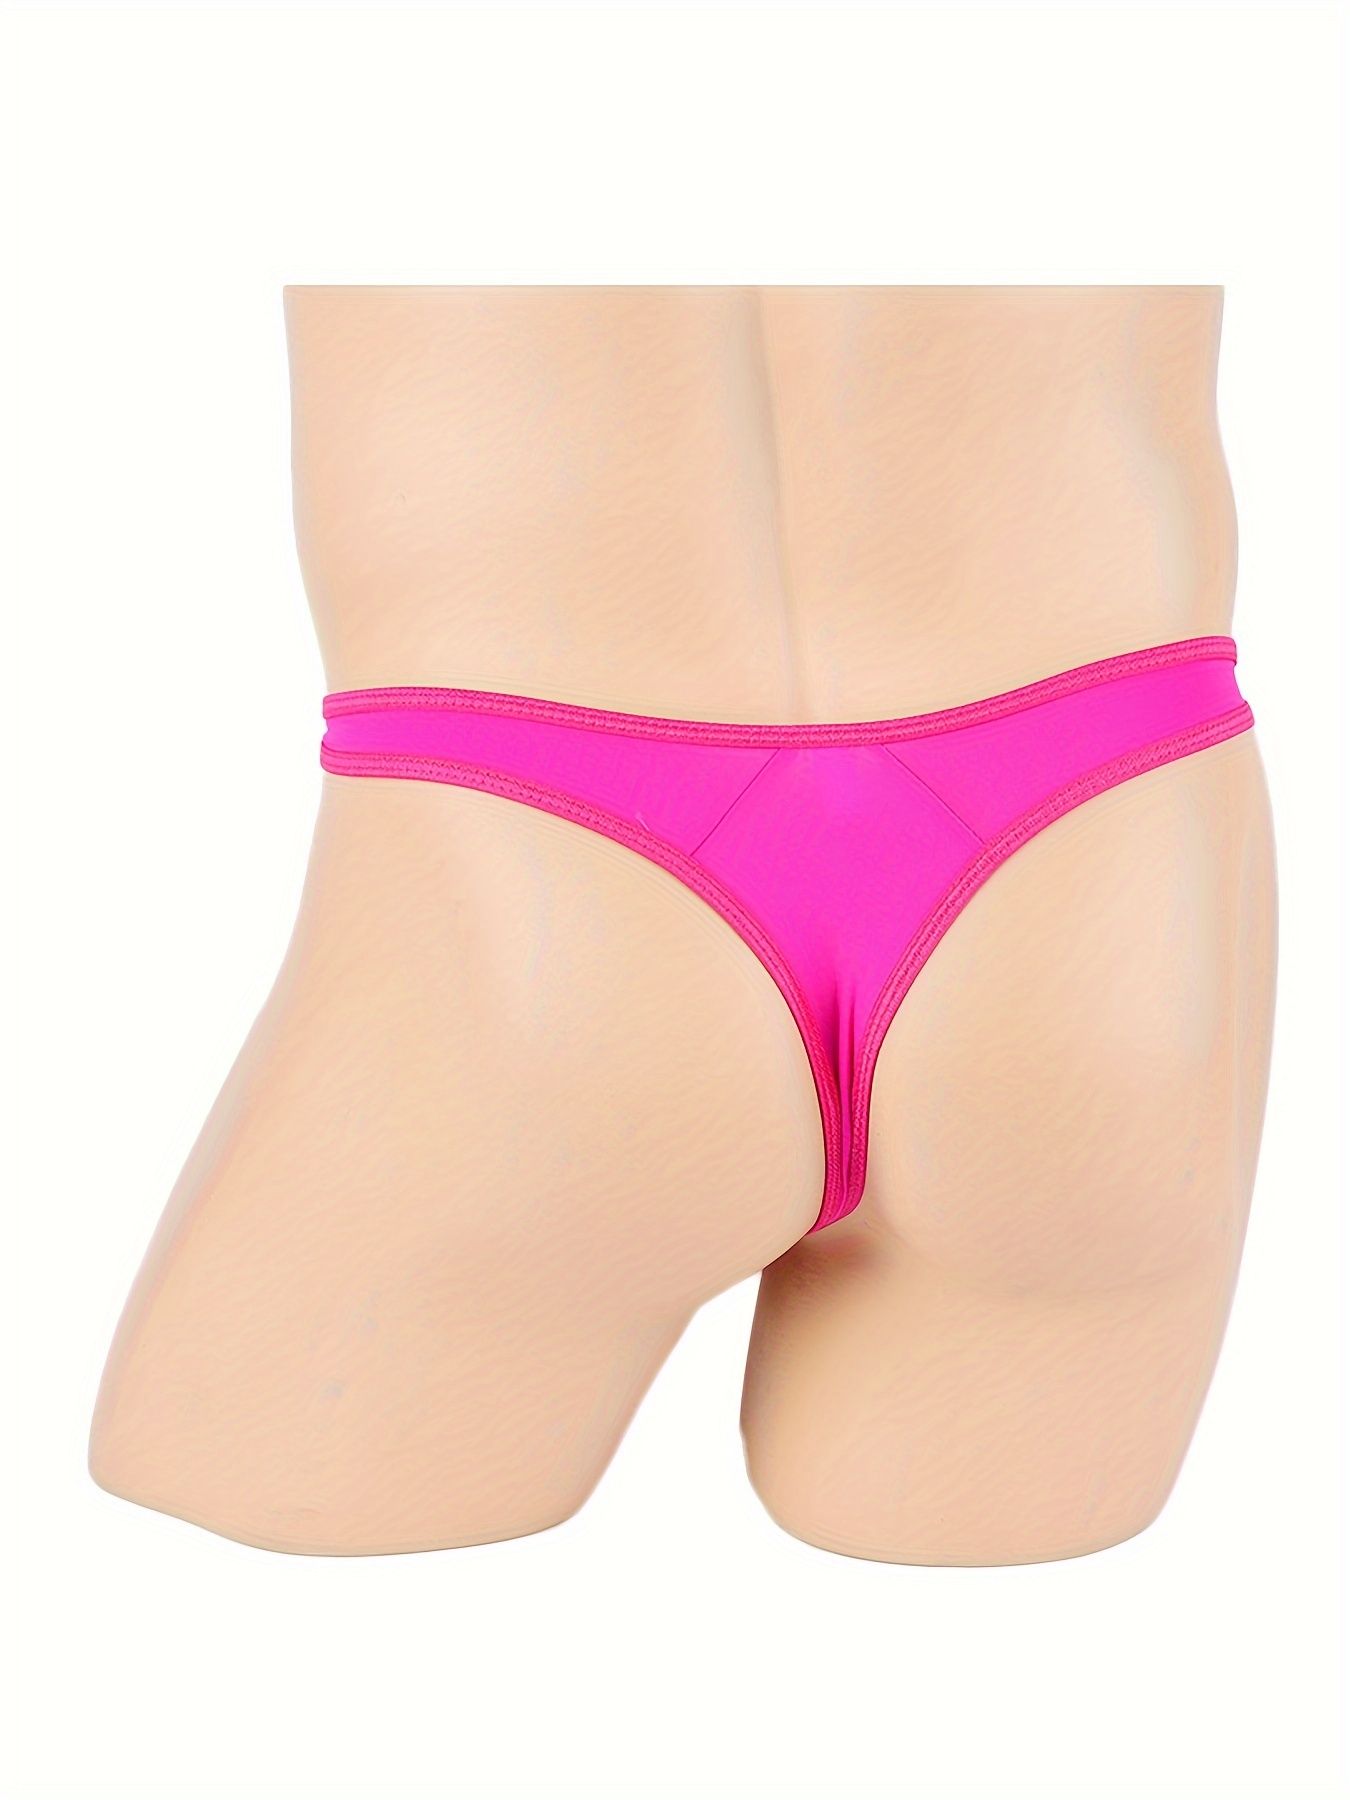 Sexy Underwear Bikinis Tanga, G-string T-back Thong